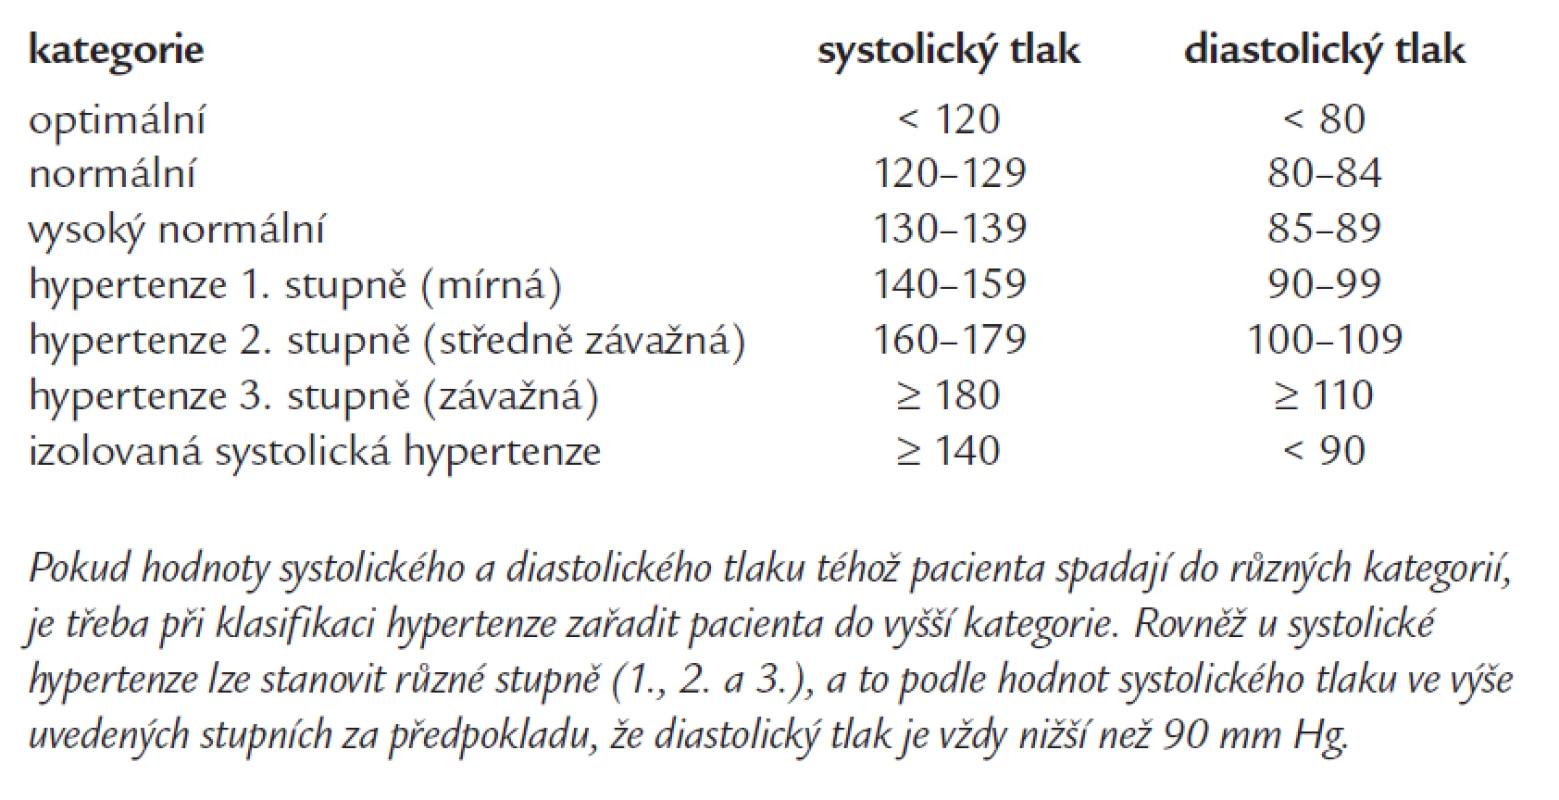 Definice a klasifikace jednotlivých kategorií krevního tlaku (v mm Hg).